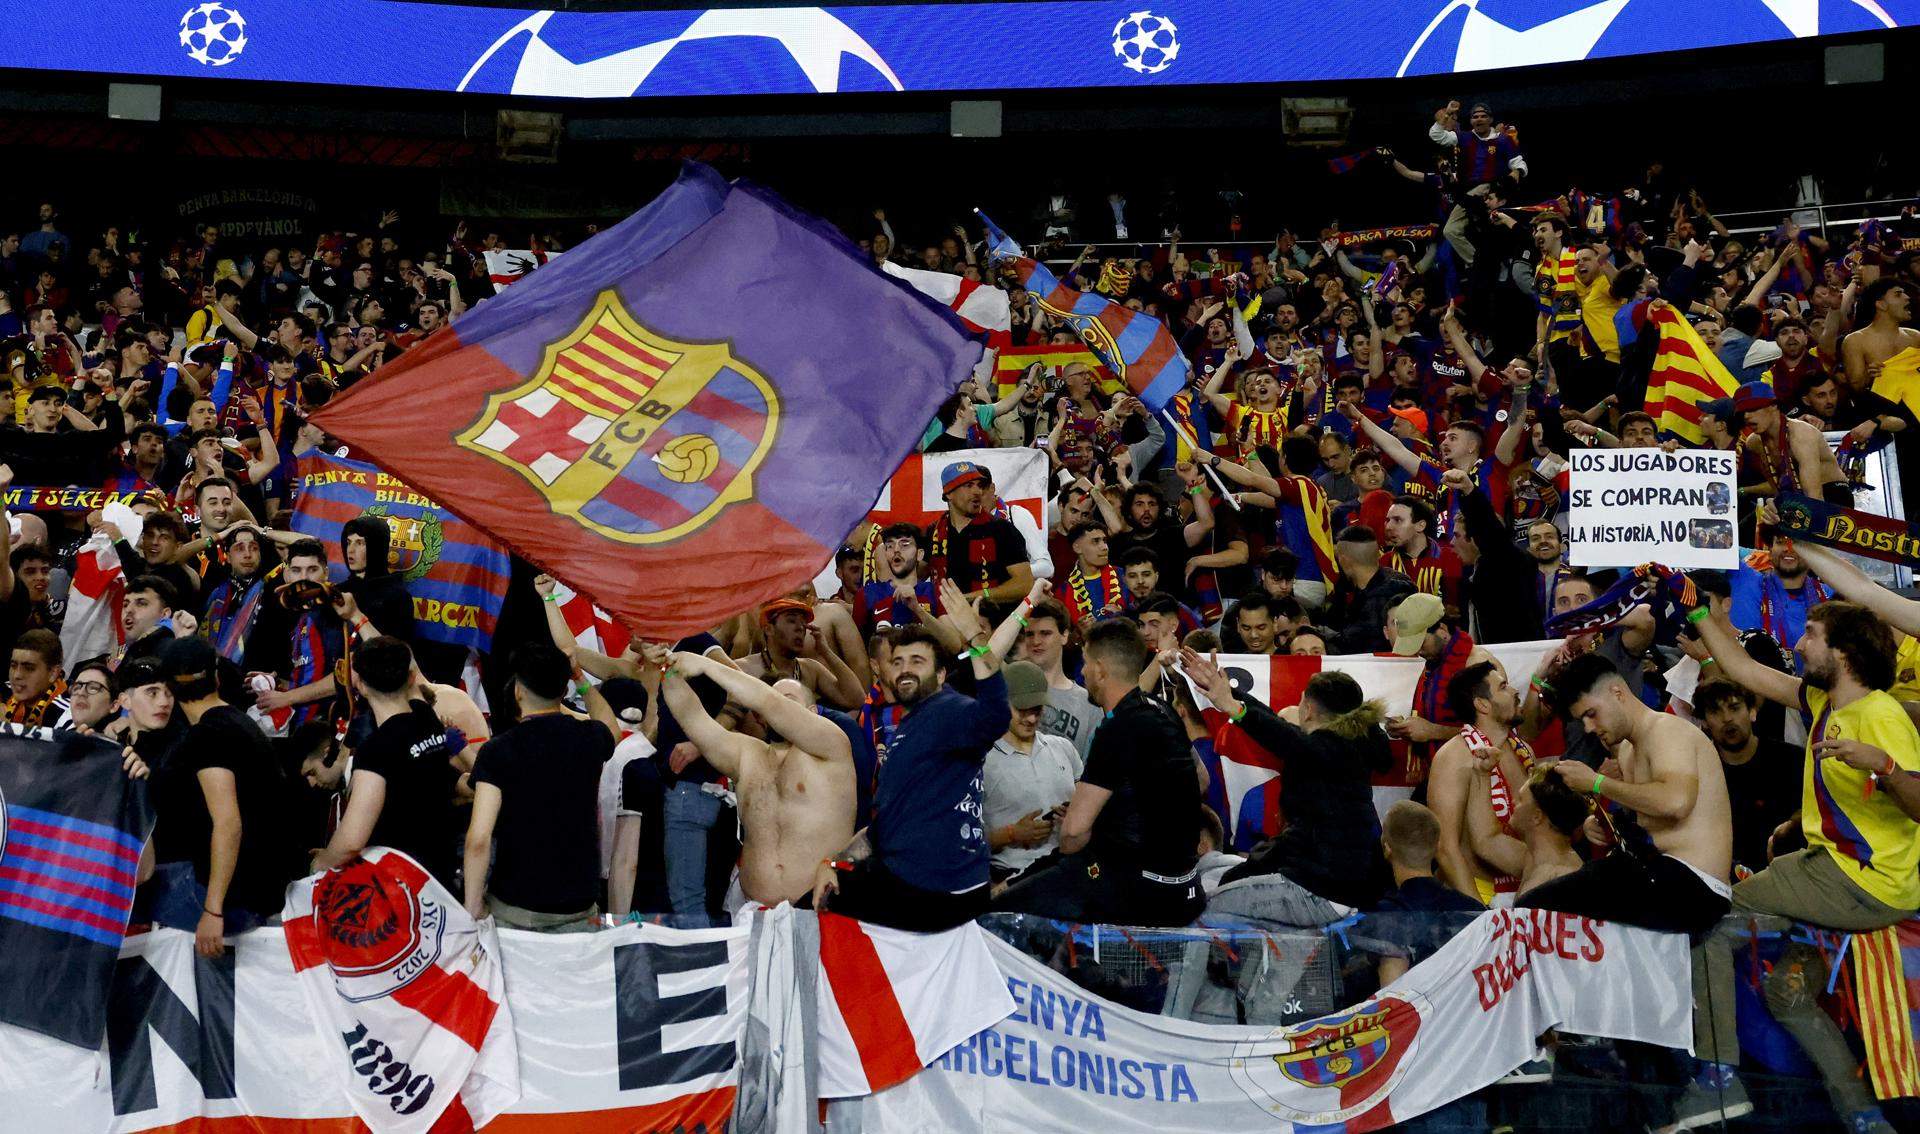 Detinguts dos aficionats del Barça per crits racistes i salutacions feixistes durant el PSG-FCB a París